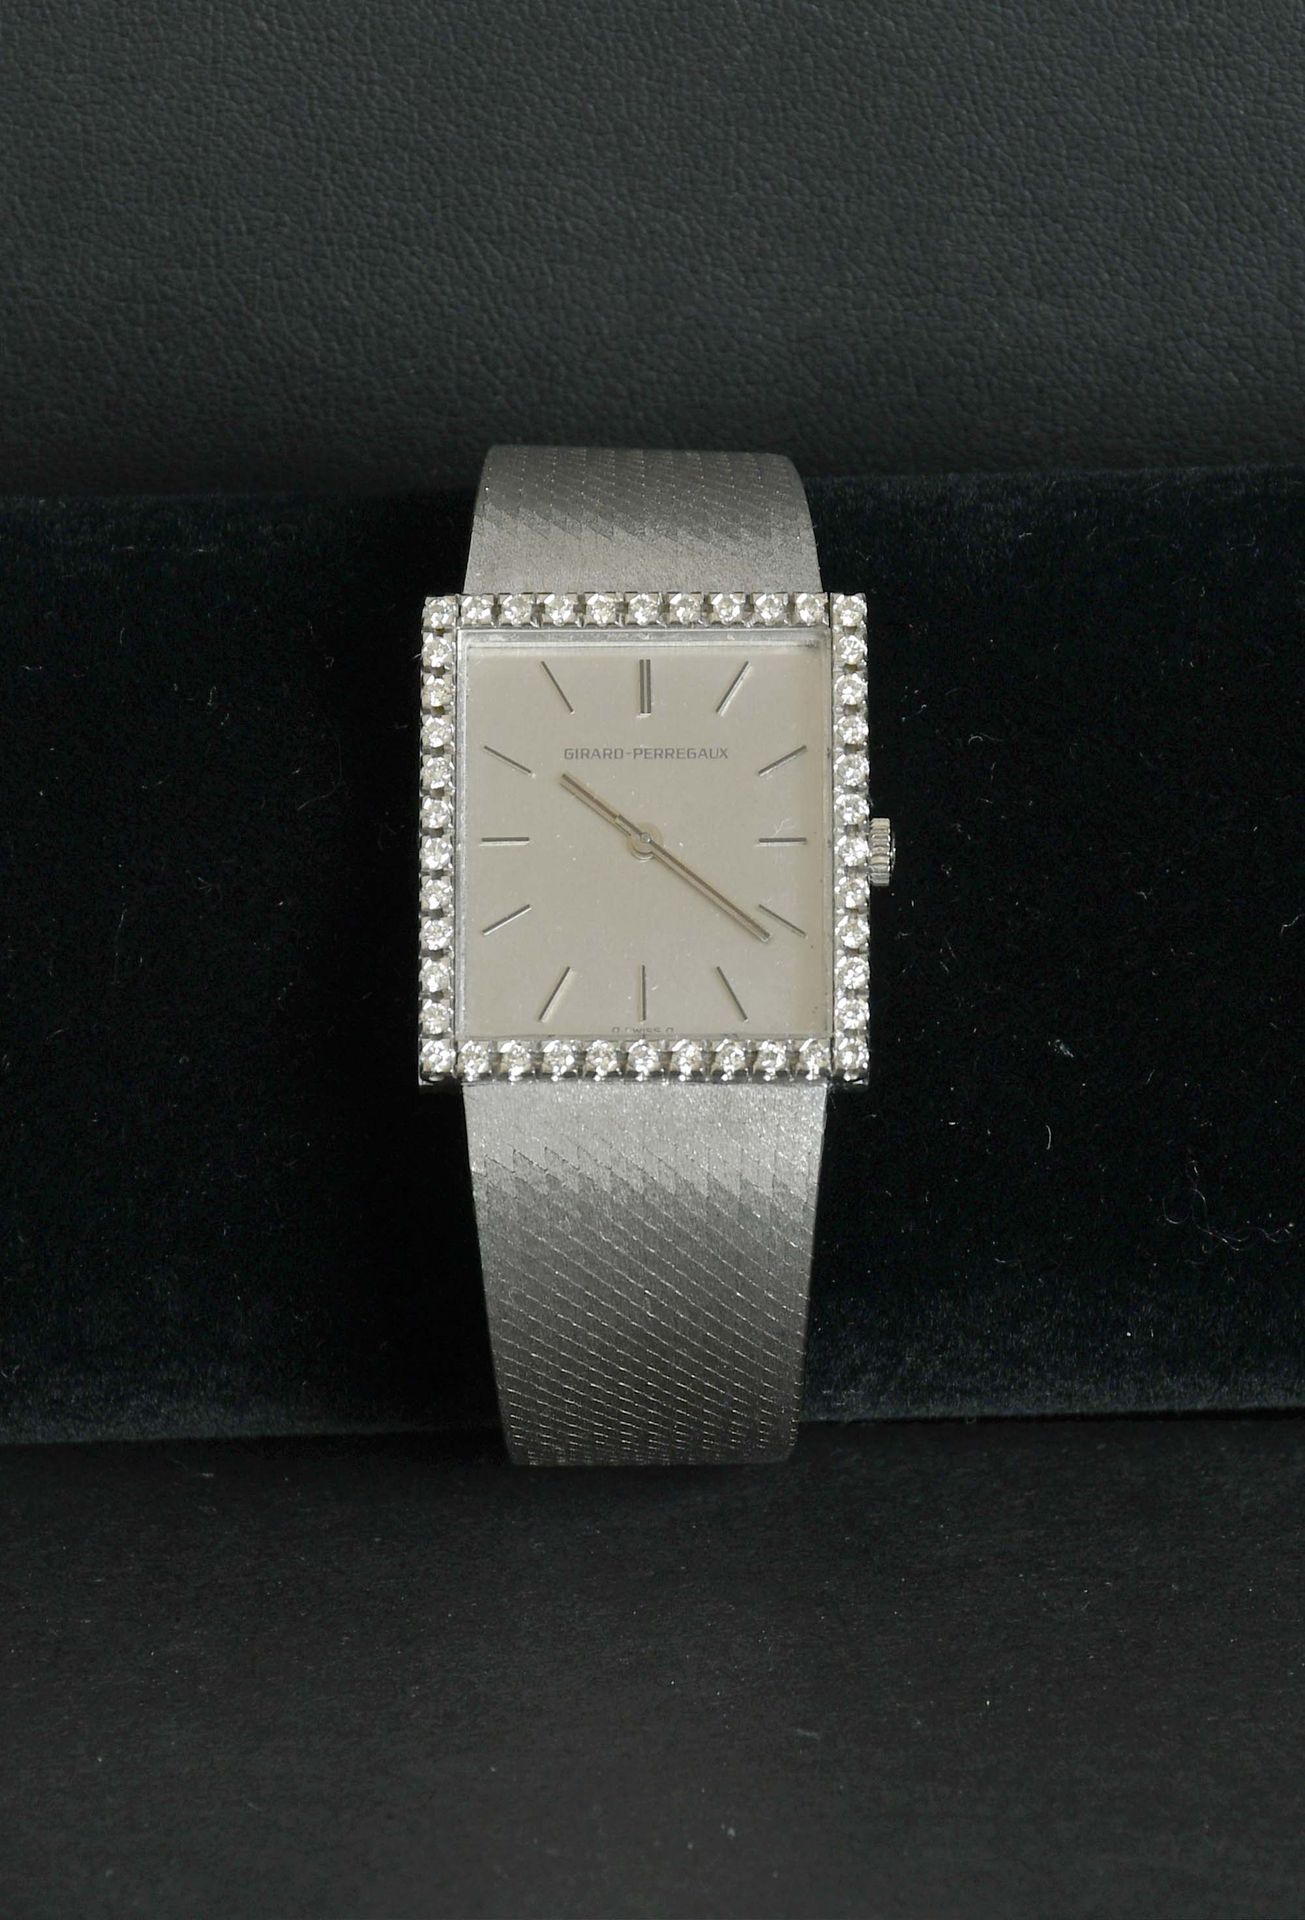 Null Schmuckstück

Girard Perregaux

Wunderschöne Uhr komplett aus achtzehn Kara&hellip;